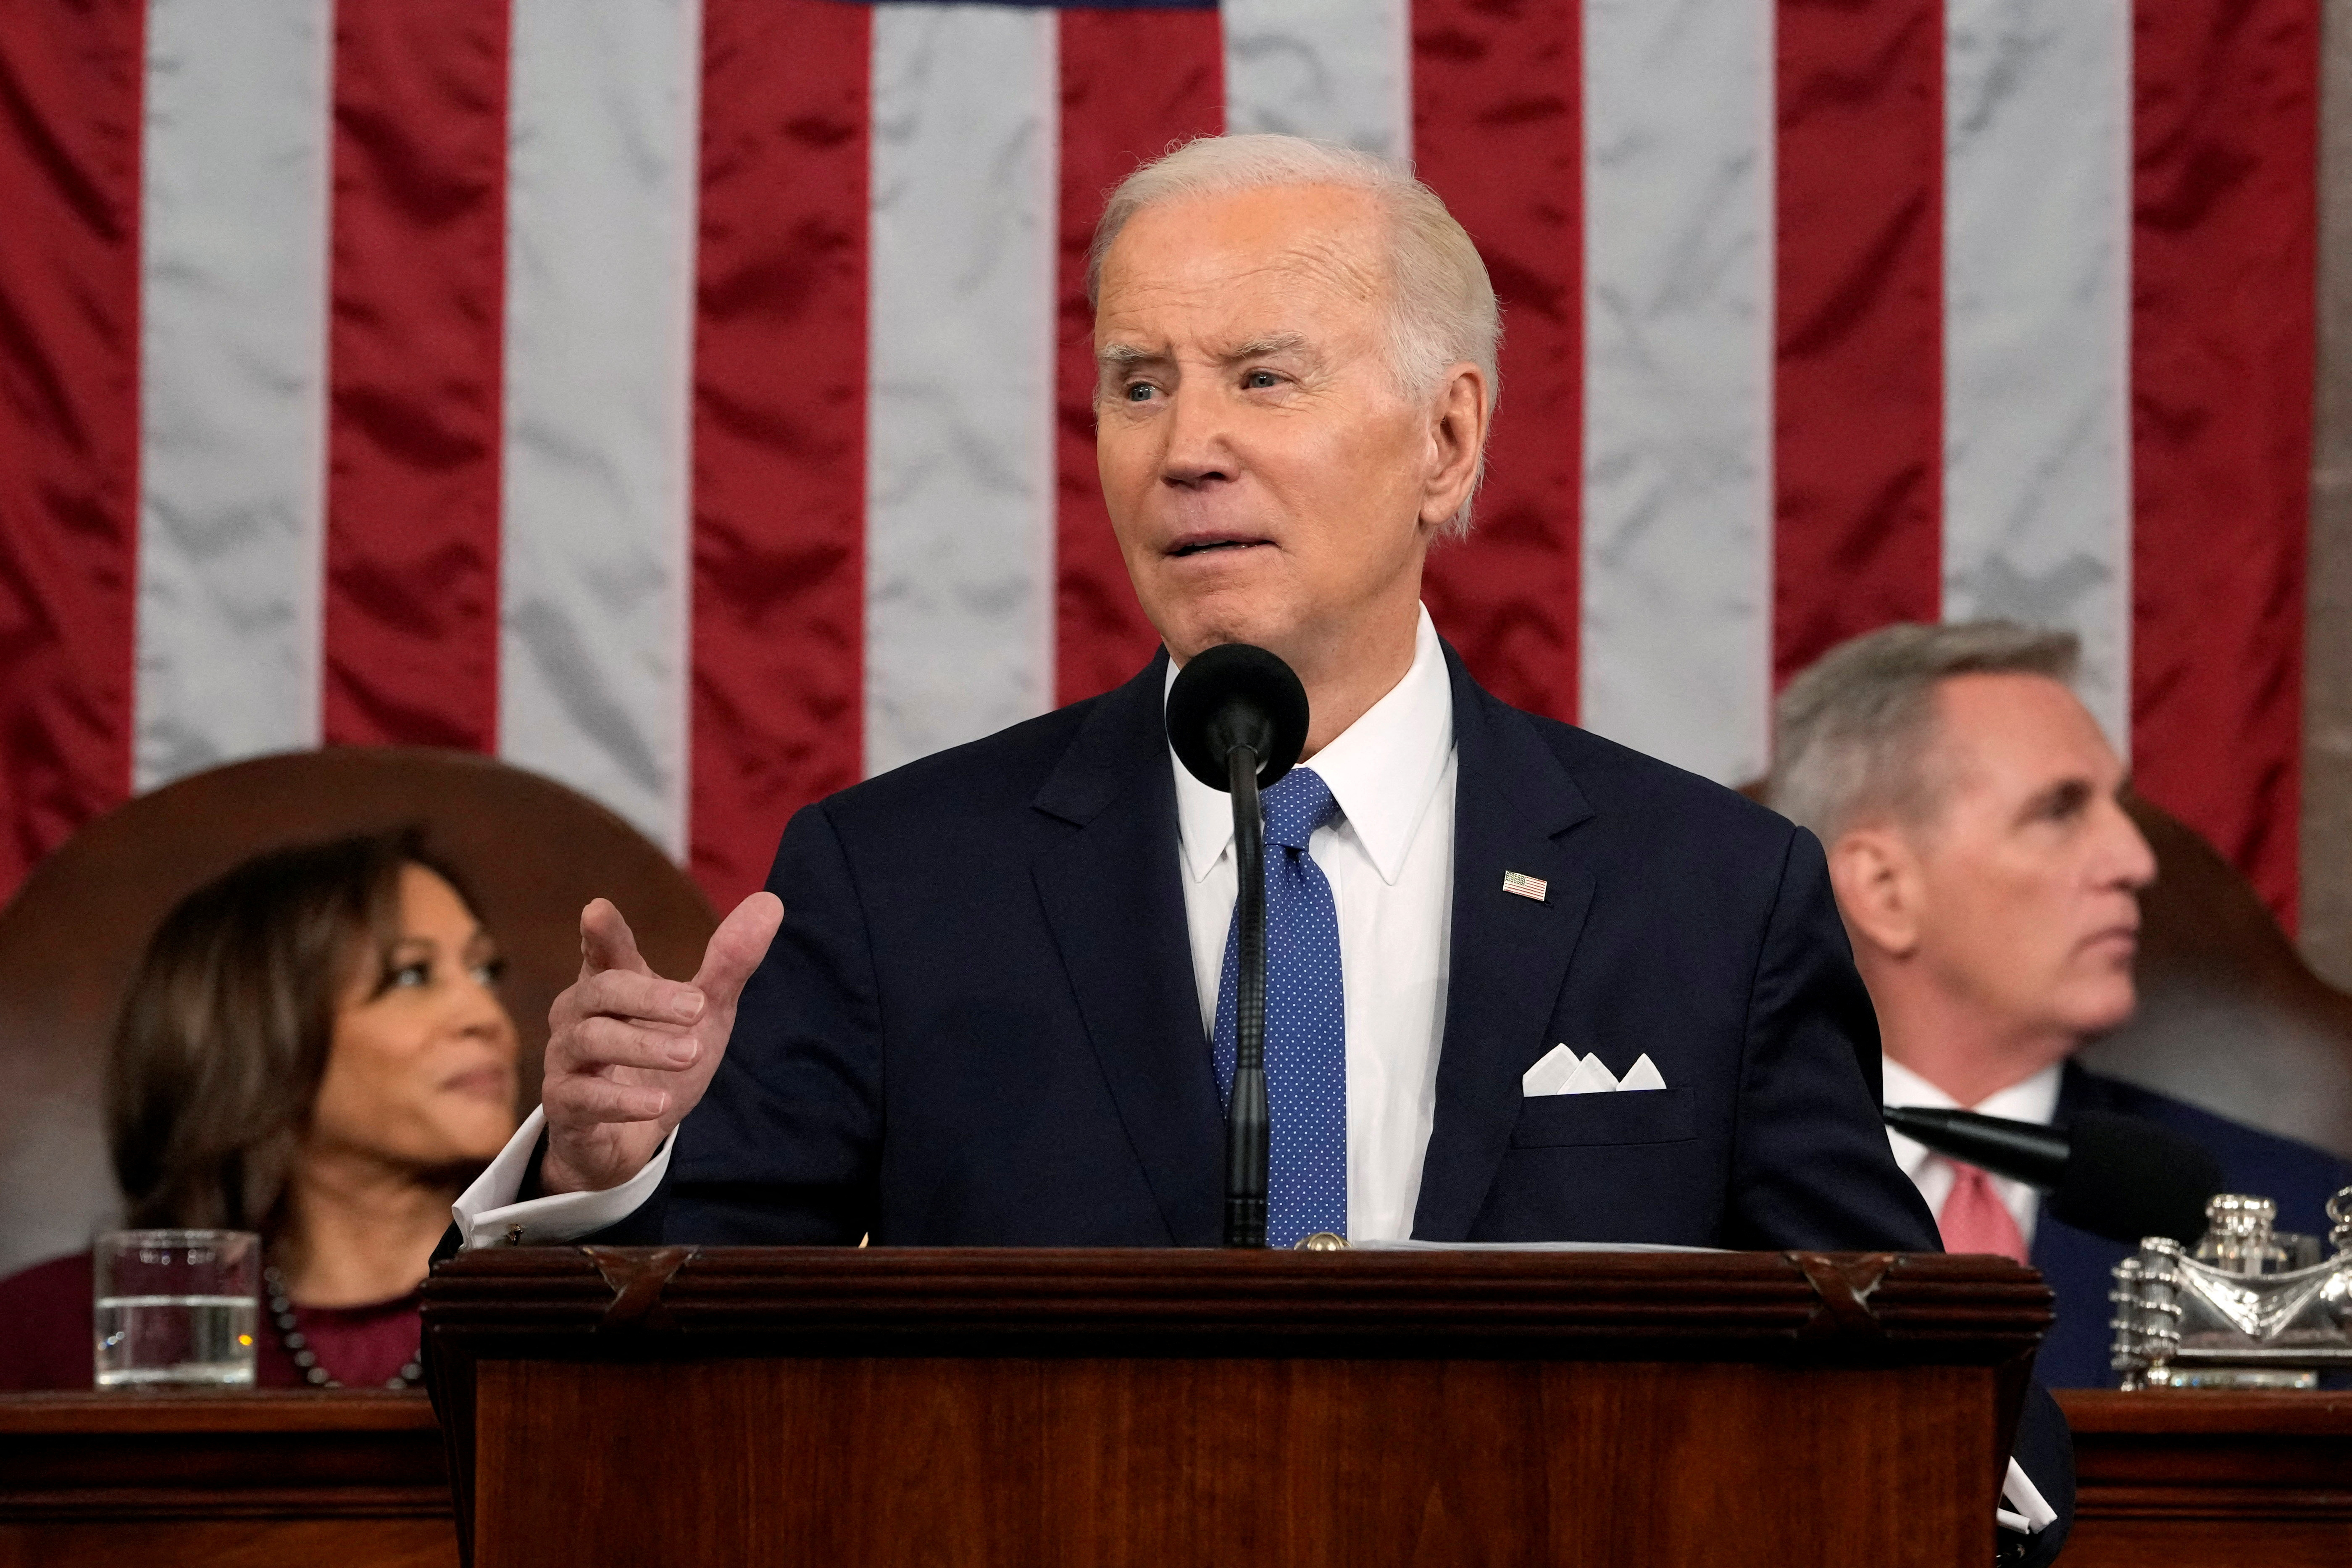 Para sumar incomodidades Joe Biden anuncio el programa 'American First'.  “Bajo mi supervisión, las carreteras, puentes y carreteras estadounidenses se construyen con productos estadounidenses”, dijo el mandatario durante su discurso del Estado de la Unión en el Congreso de su país.